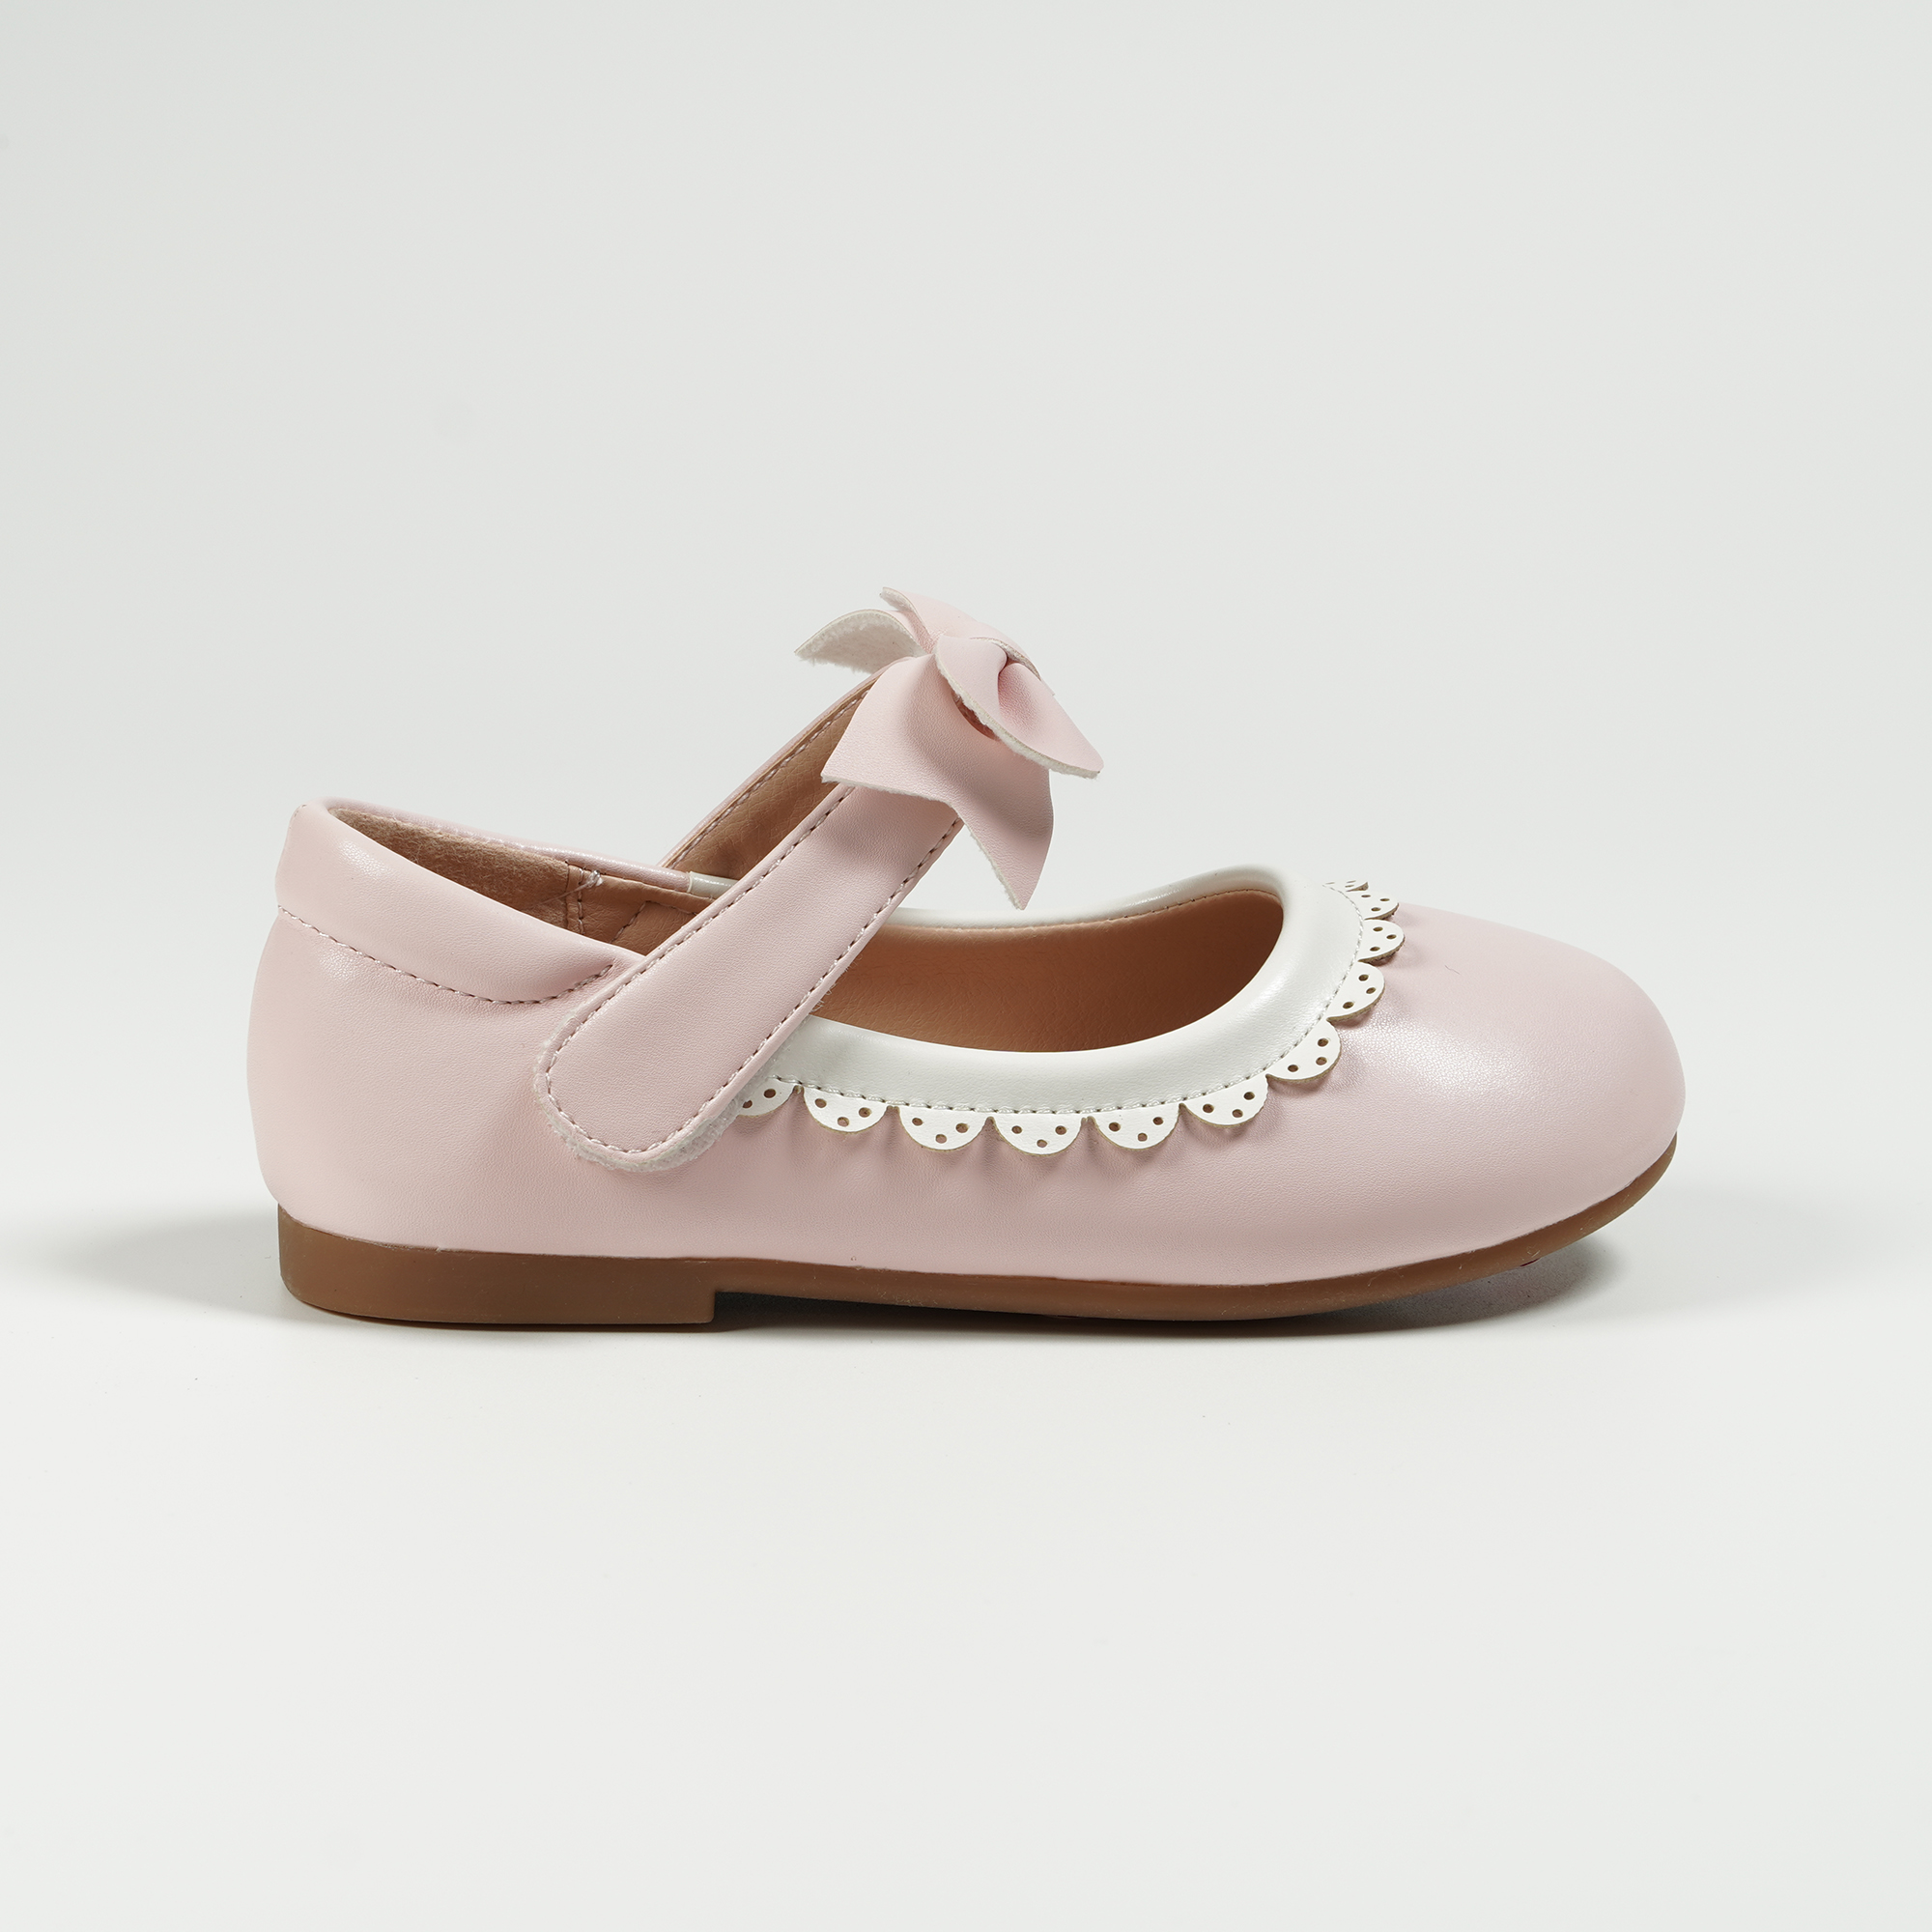 Κομψά κοριτσίστικα φοιτητικά παπούτσια με λευκή δαντέλα Ροζ μπαλαρίνα με φιόγκο Flats για νήπια